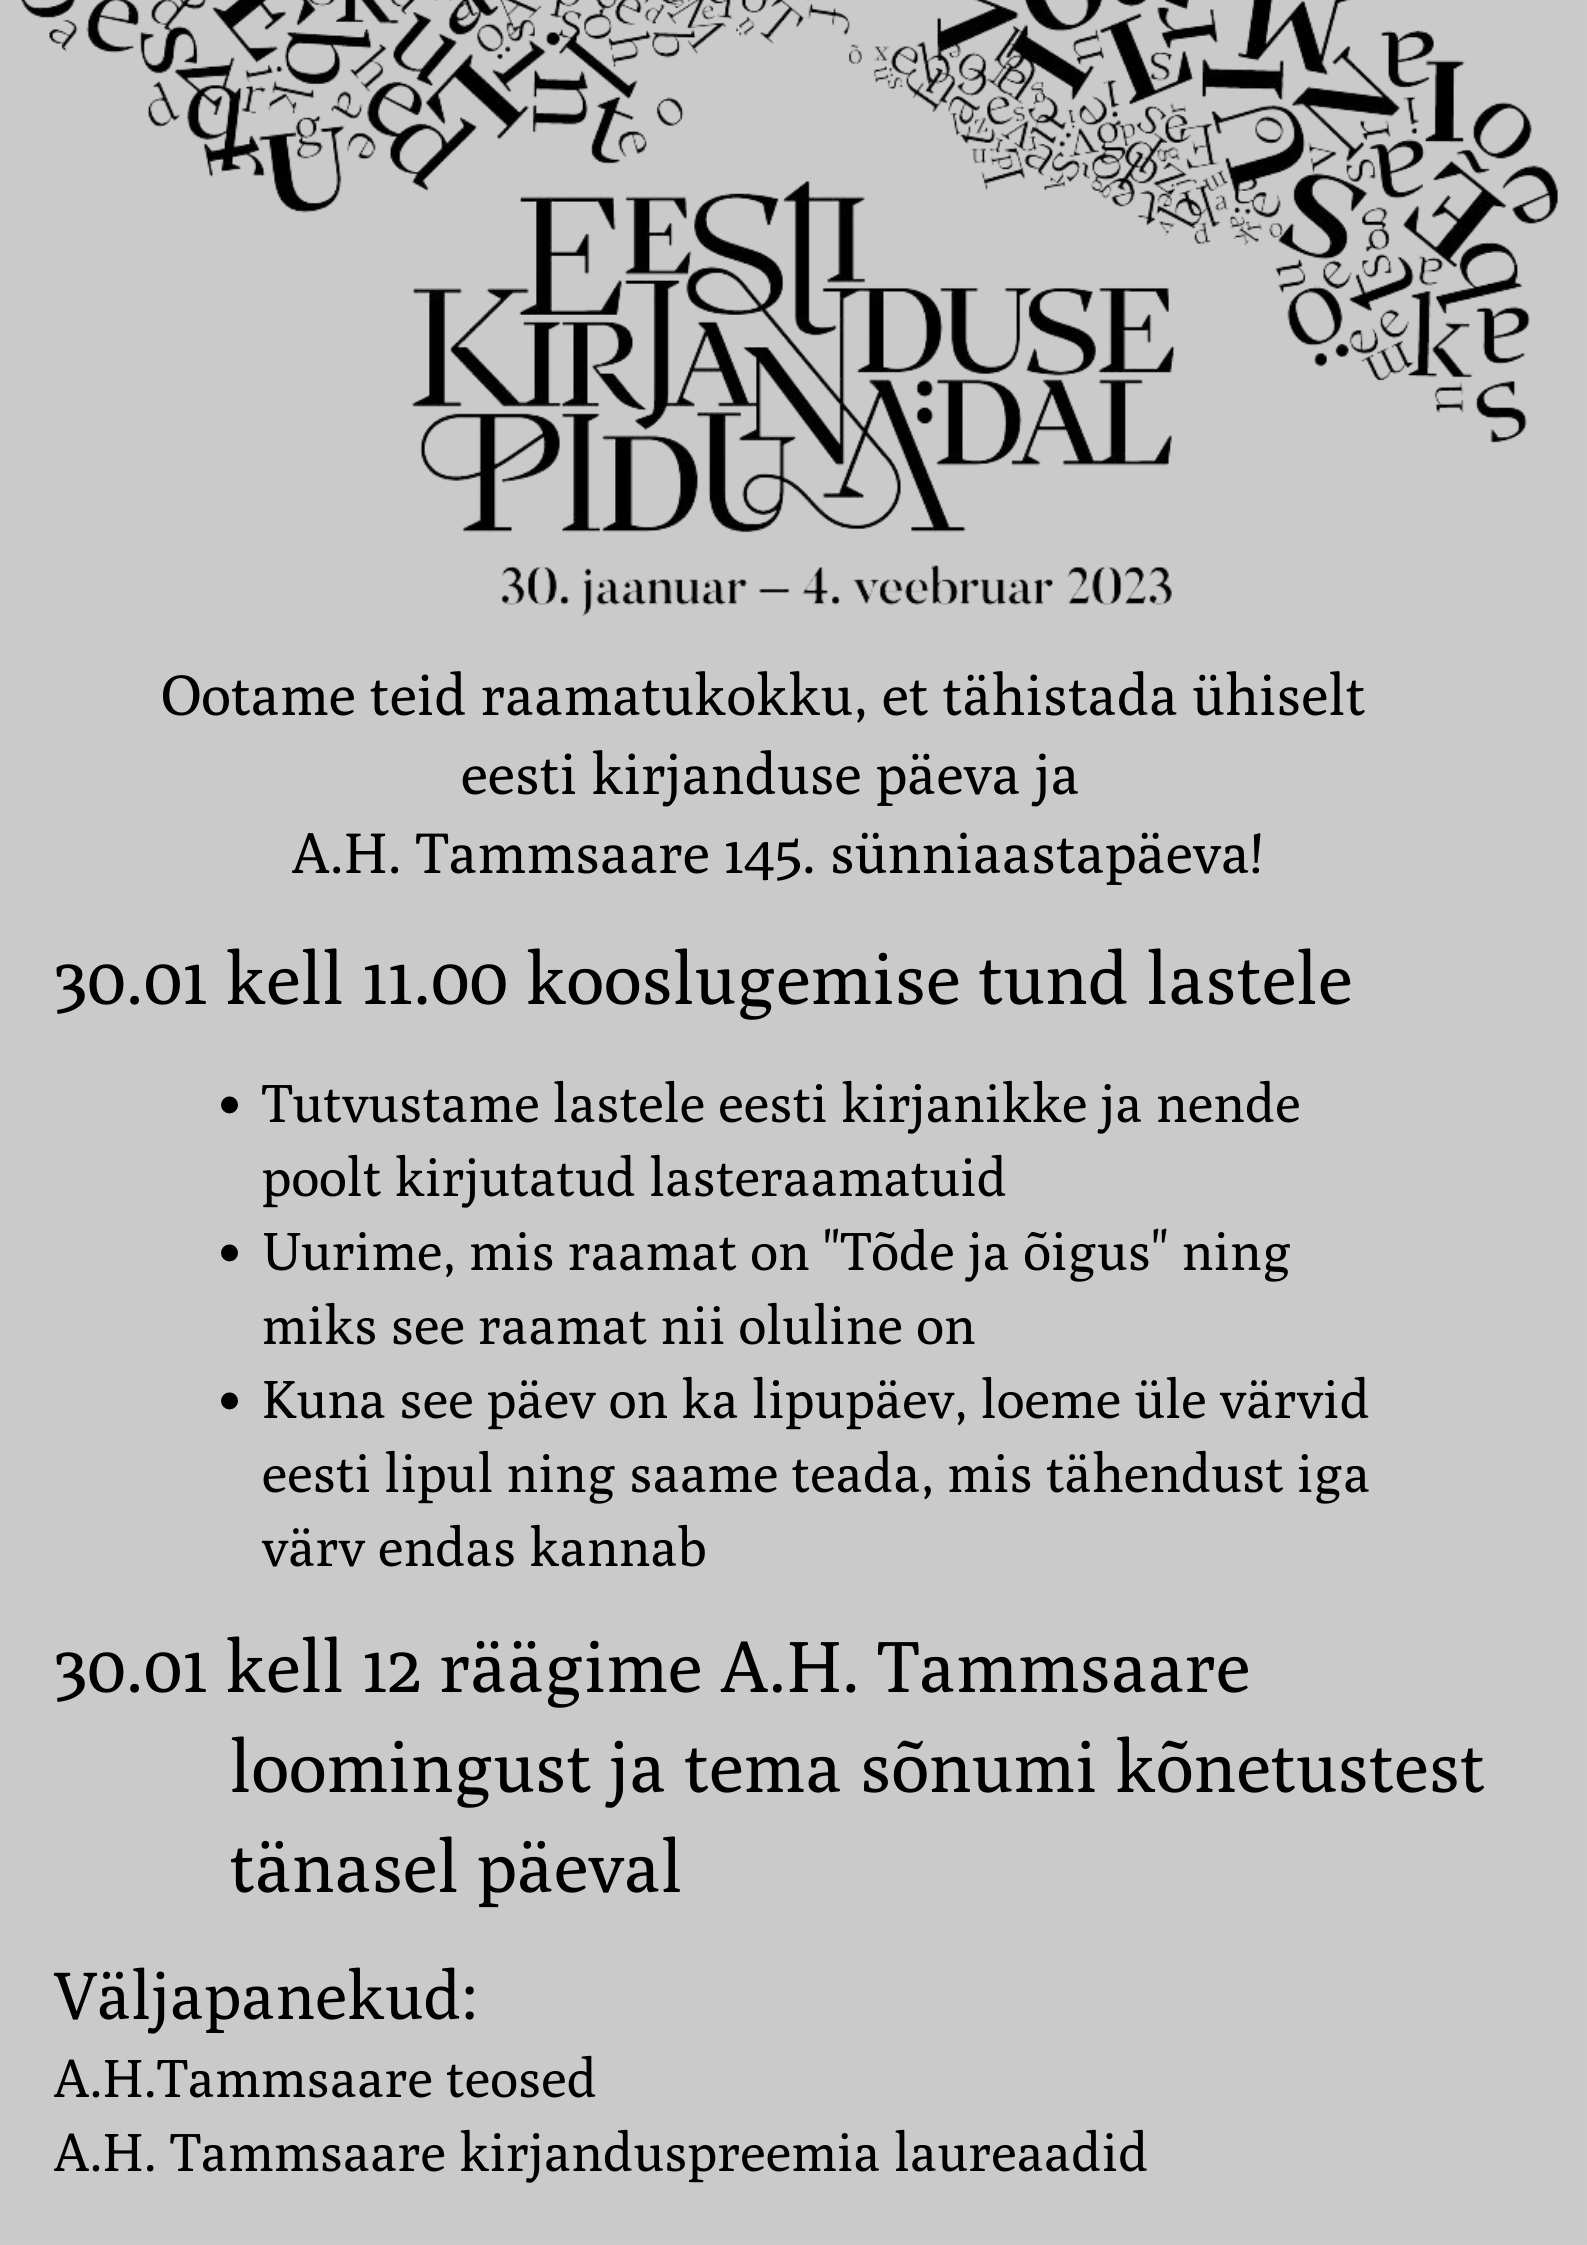 Eesti kirjanduse päev plakat Facebook Post Landscape Plakat vertikaalpaigutusega 42 594 cm